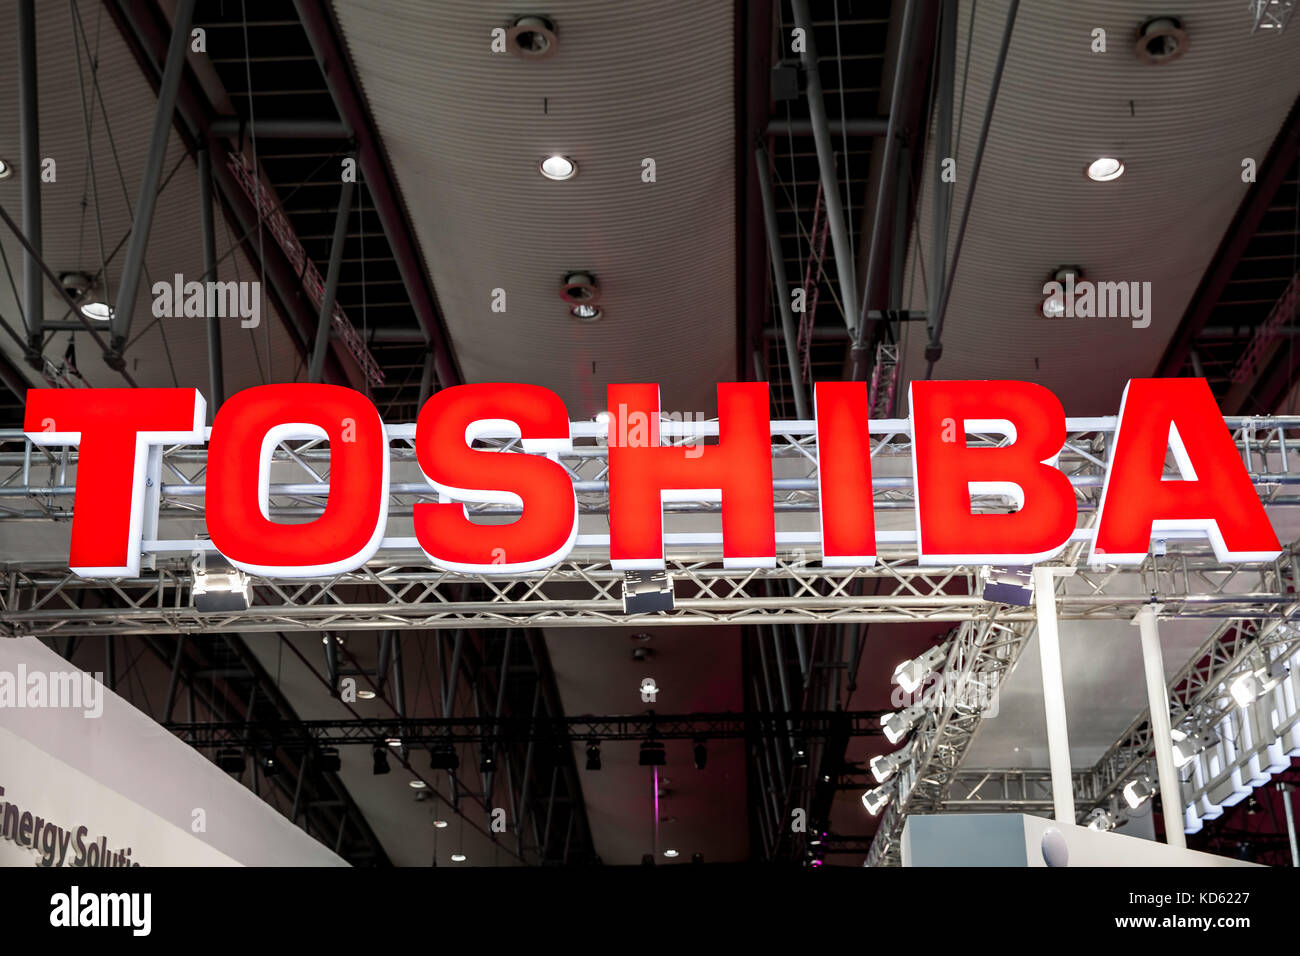 Logo de l'entreprise toshiba signe sur foire-exposition Cebit 2017 à Hanovre, Allemagne Banque D'Images